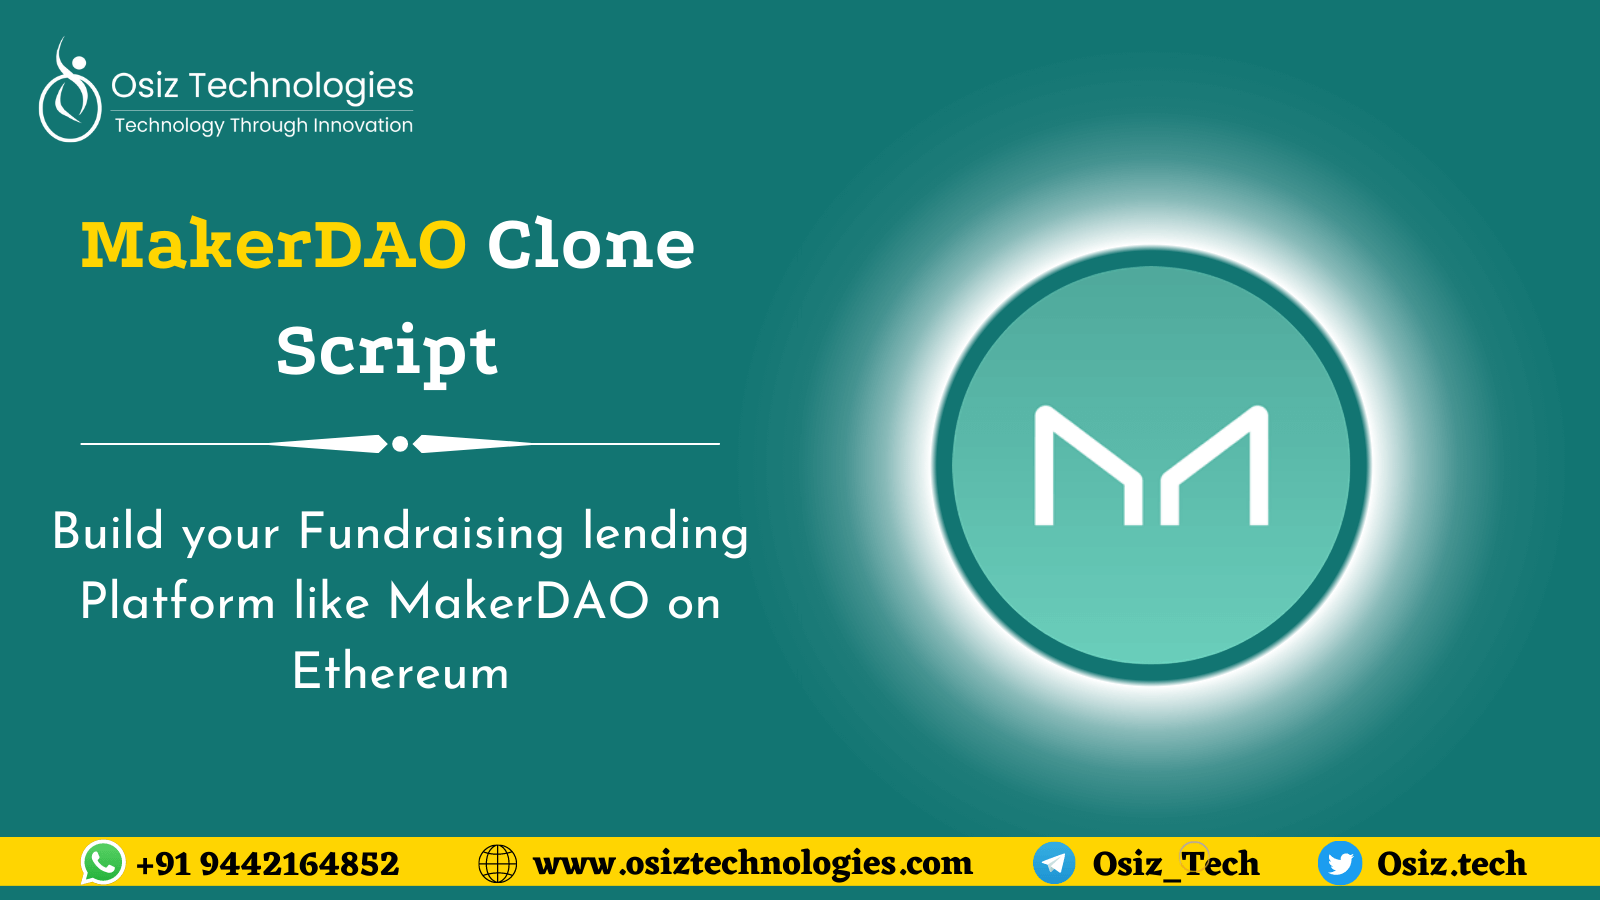 MakerDAO Clone Script-To develop a DAO-based DeFi lending platform like MakerDAO